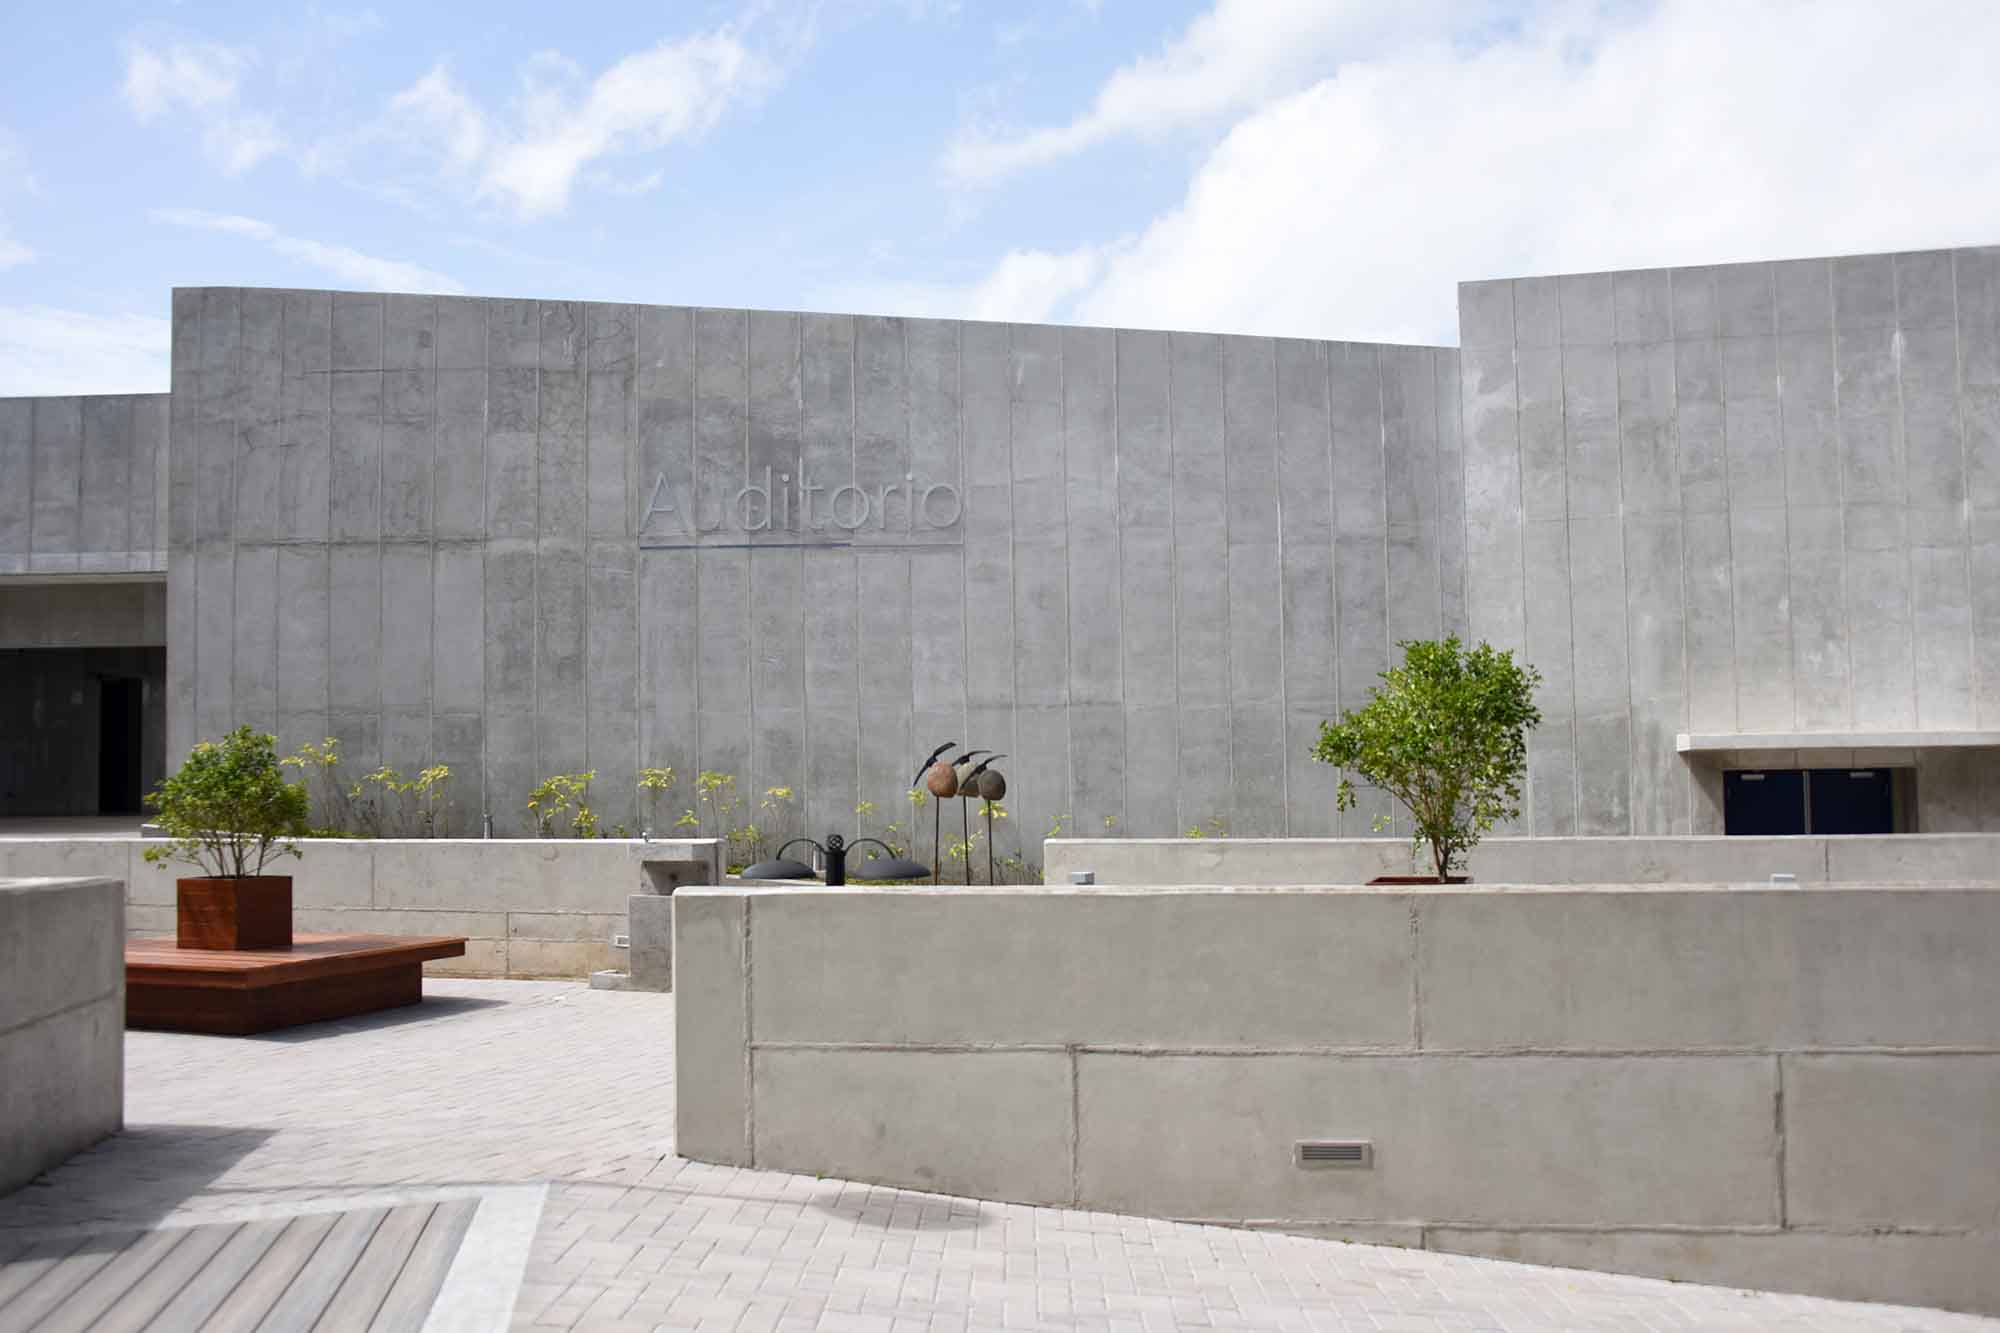 Auditorio Plaza de la Autonomía